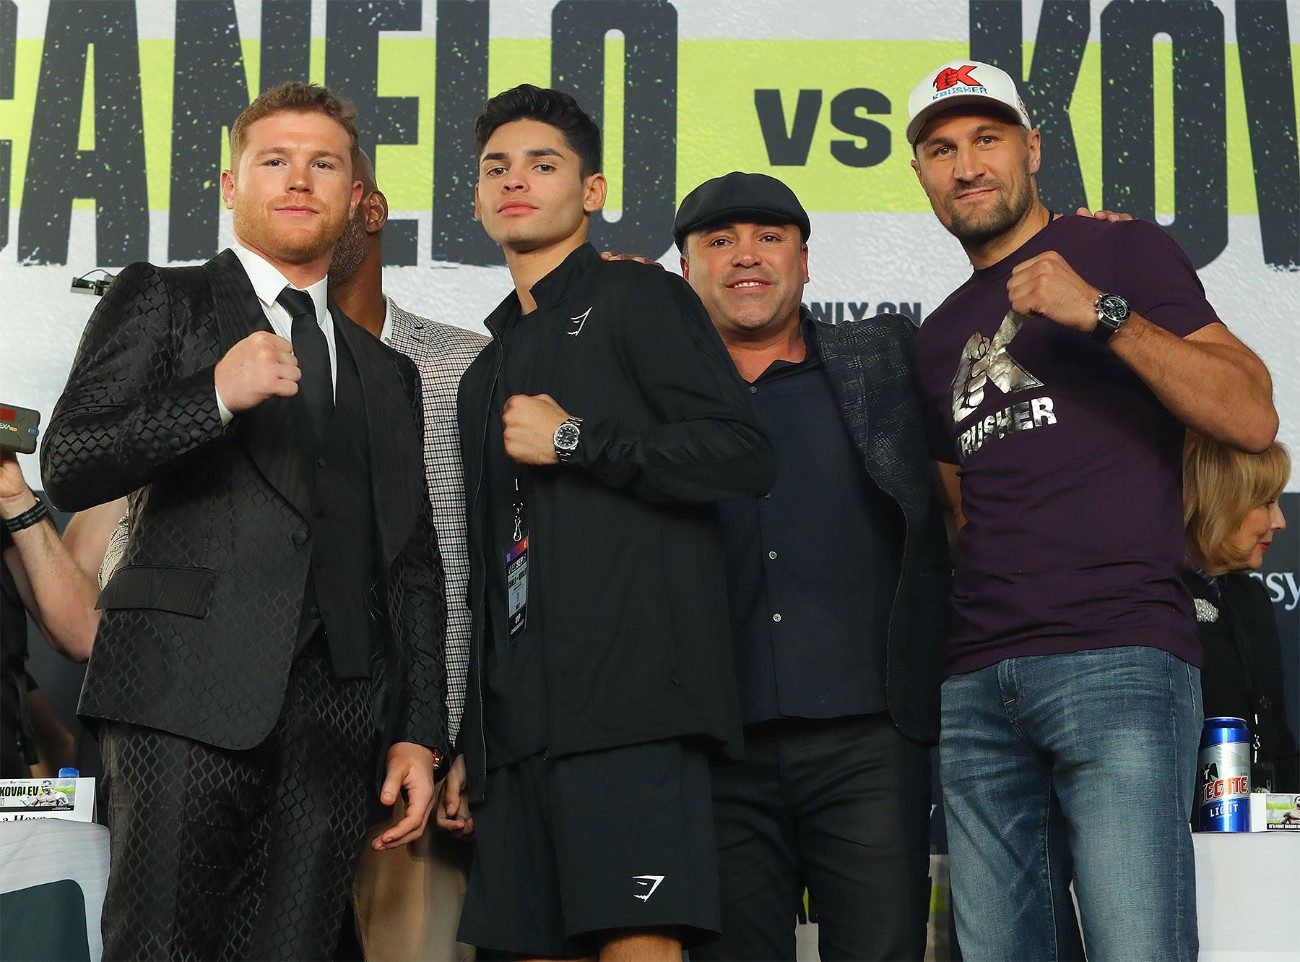 Oscar De La Hoya, Canelo Alvarez, Sergey Kovalev boxing photo